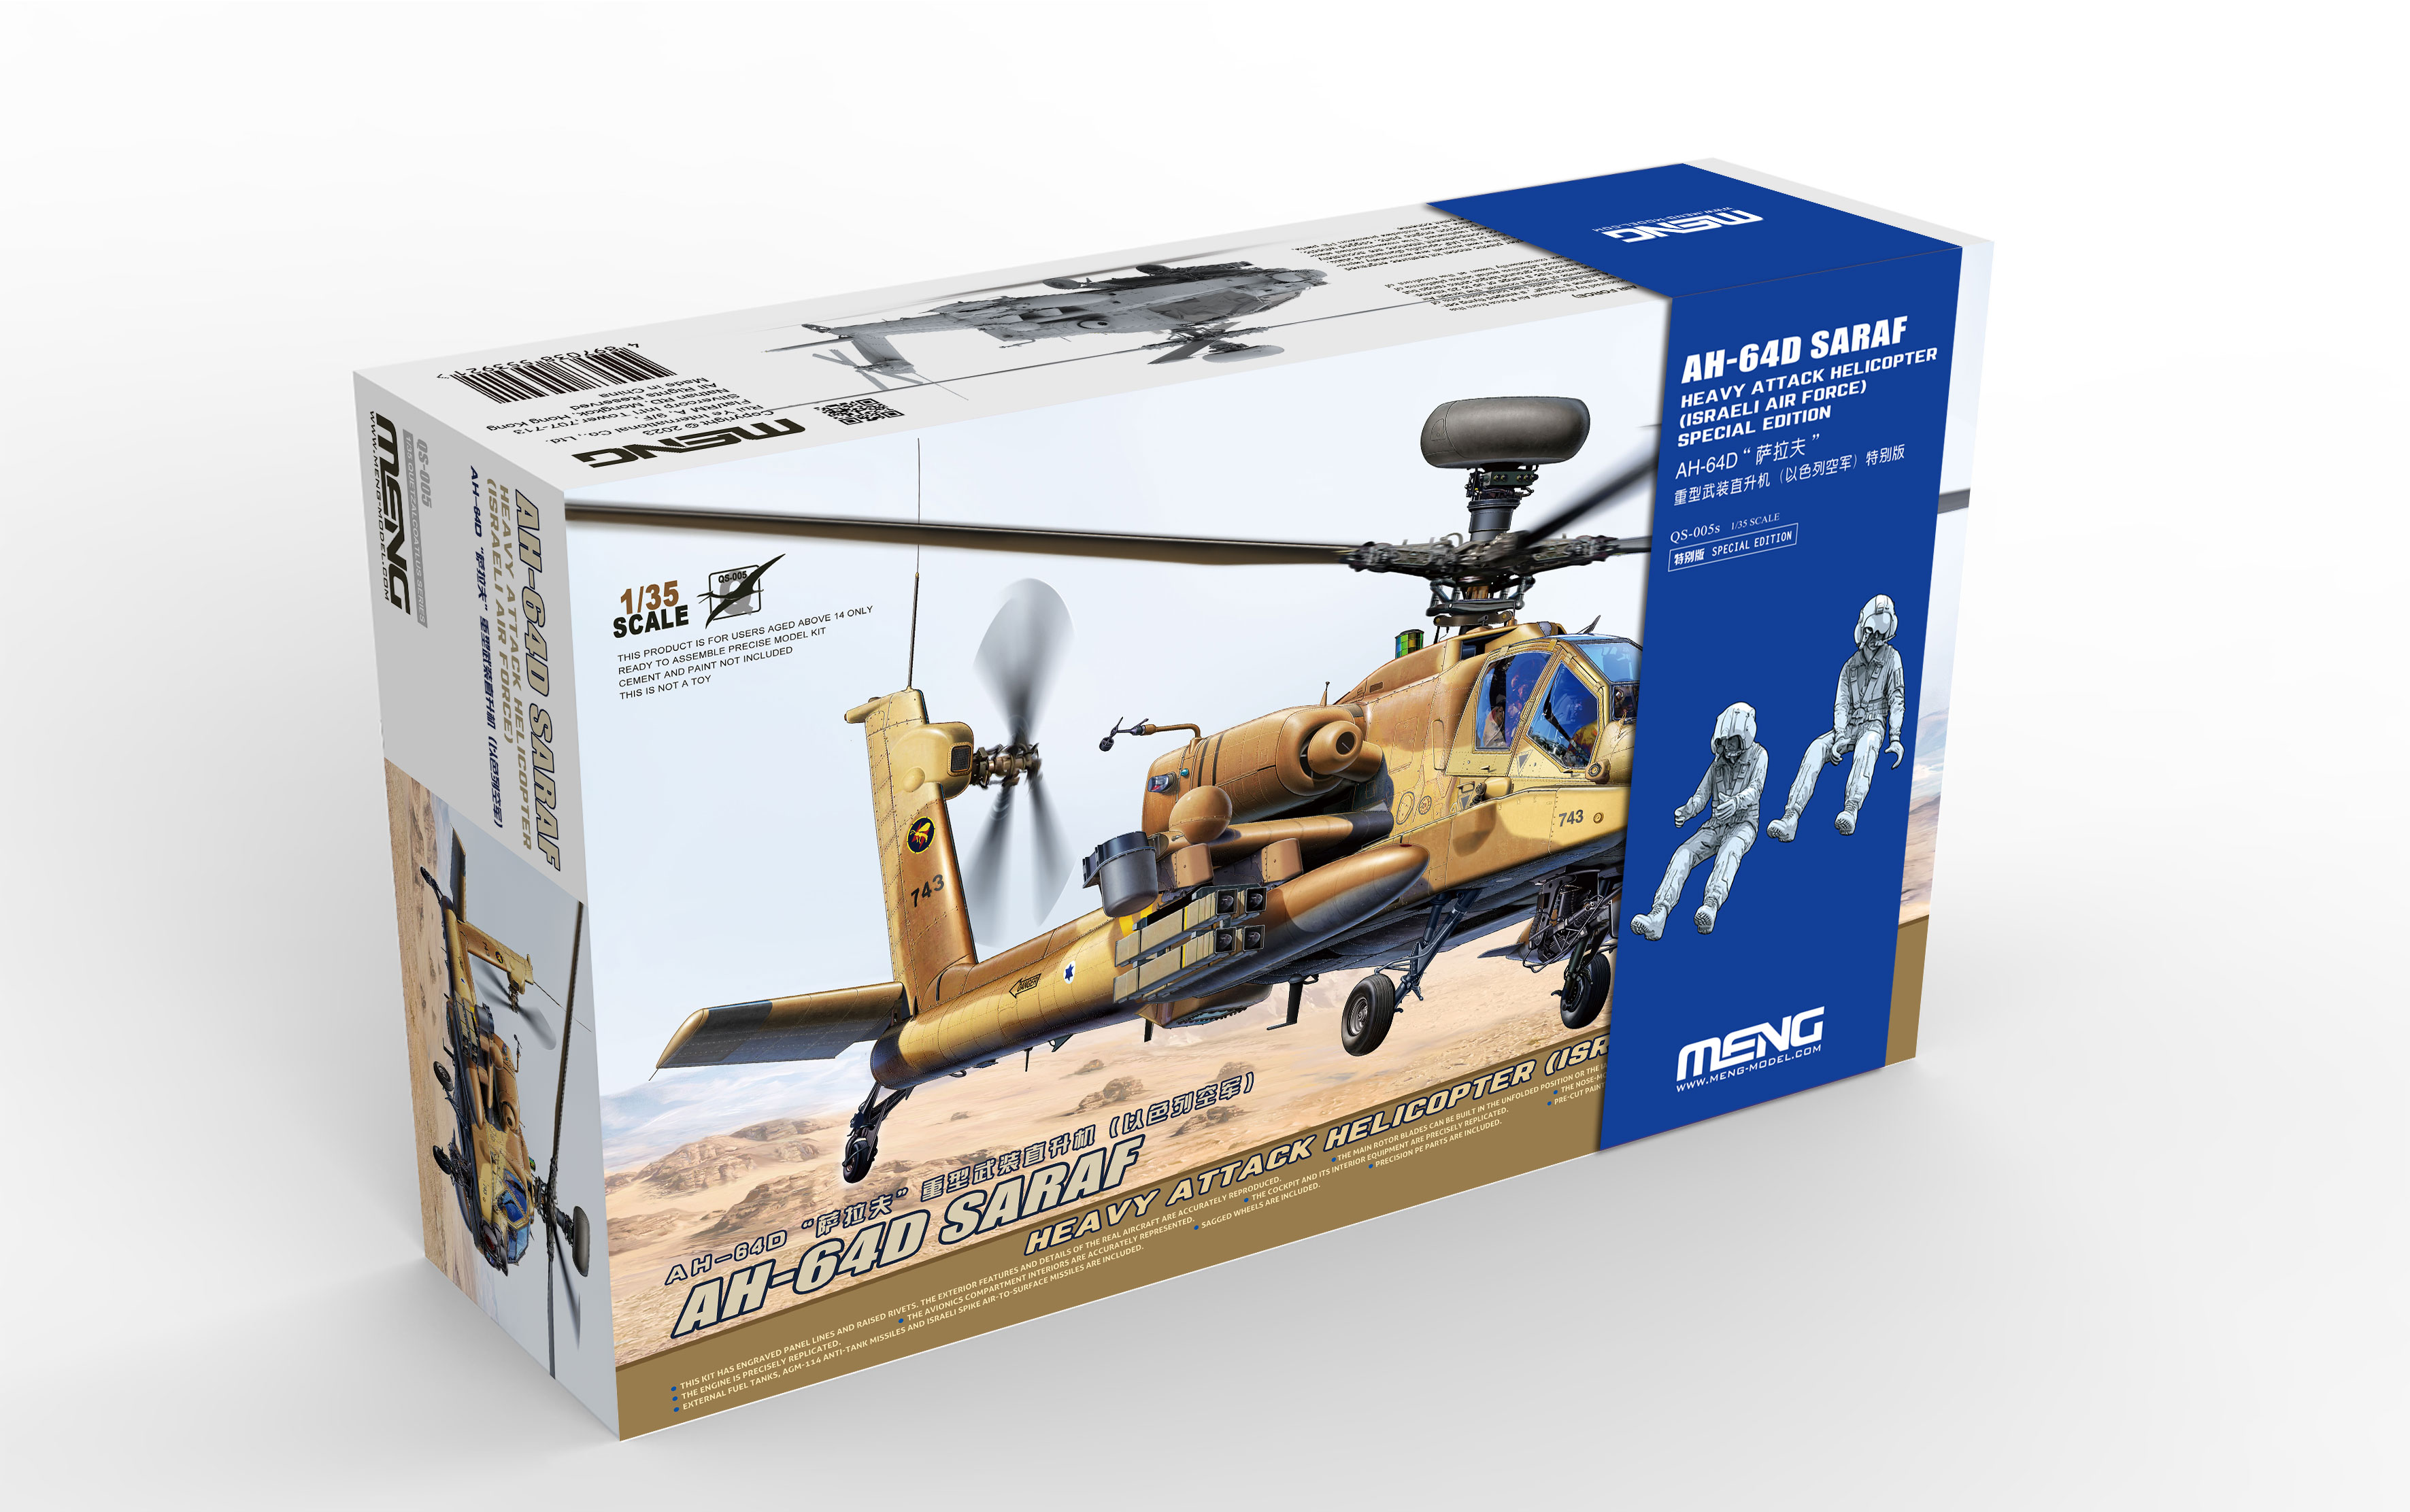 1/35 イスラエル空軍 AH-64D サラフ 戦闘ヘリコプター (レジン製フィギュア2体付)
